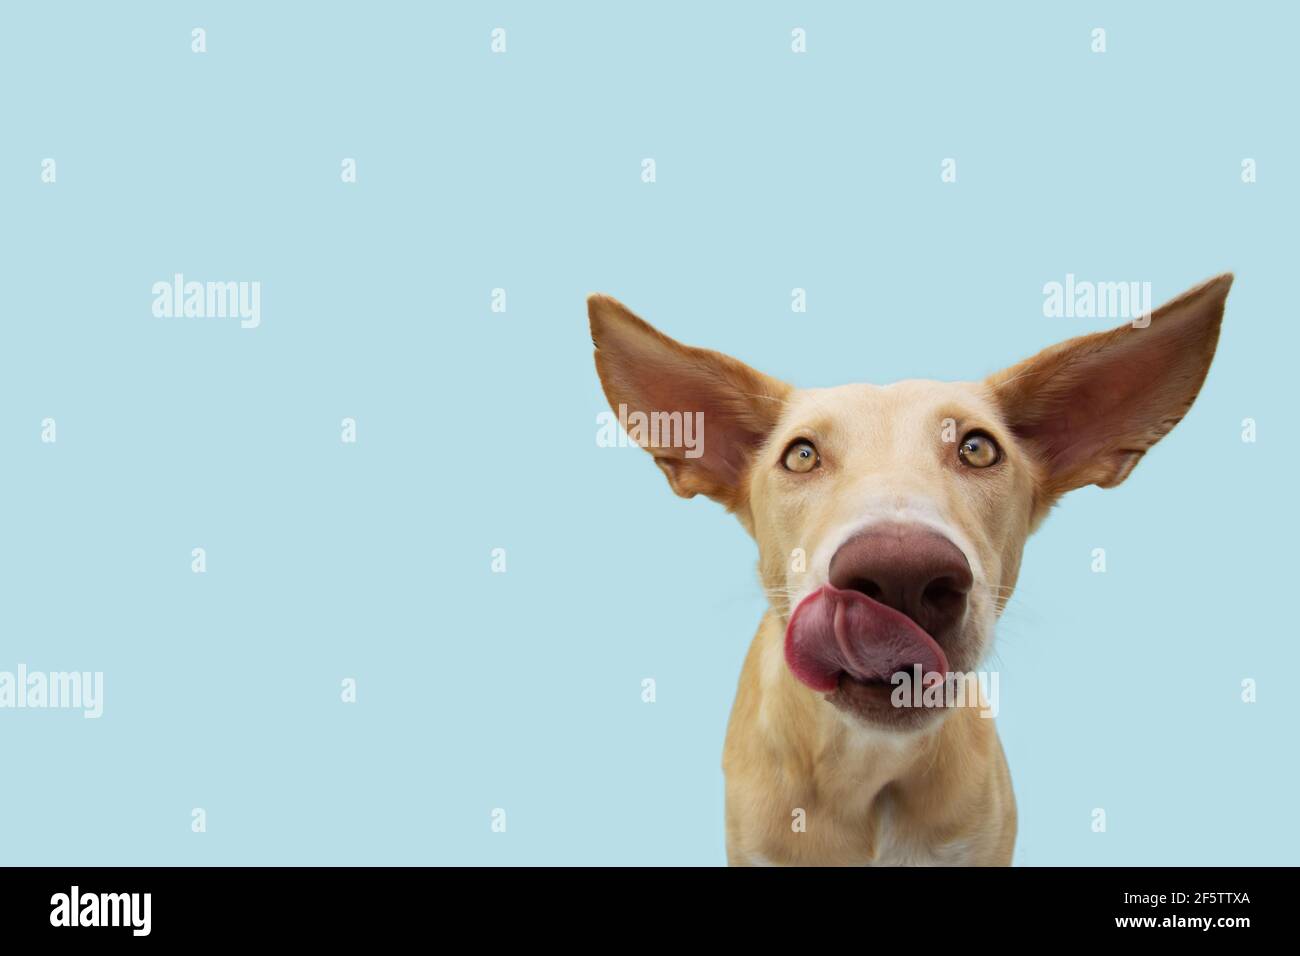 Lustiger Hund leckt seine Lippen mit großen Ohren Blick auf die Kamera.  Isoliert auf blauem pastellfarbenem Hintergrund Stockfotografie - Alamy